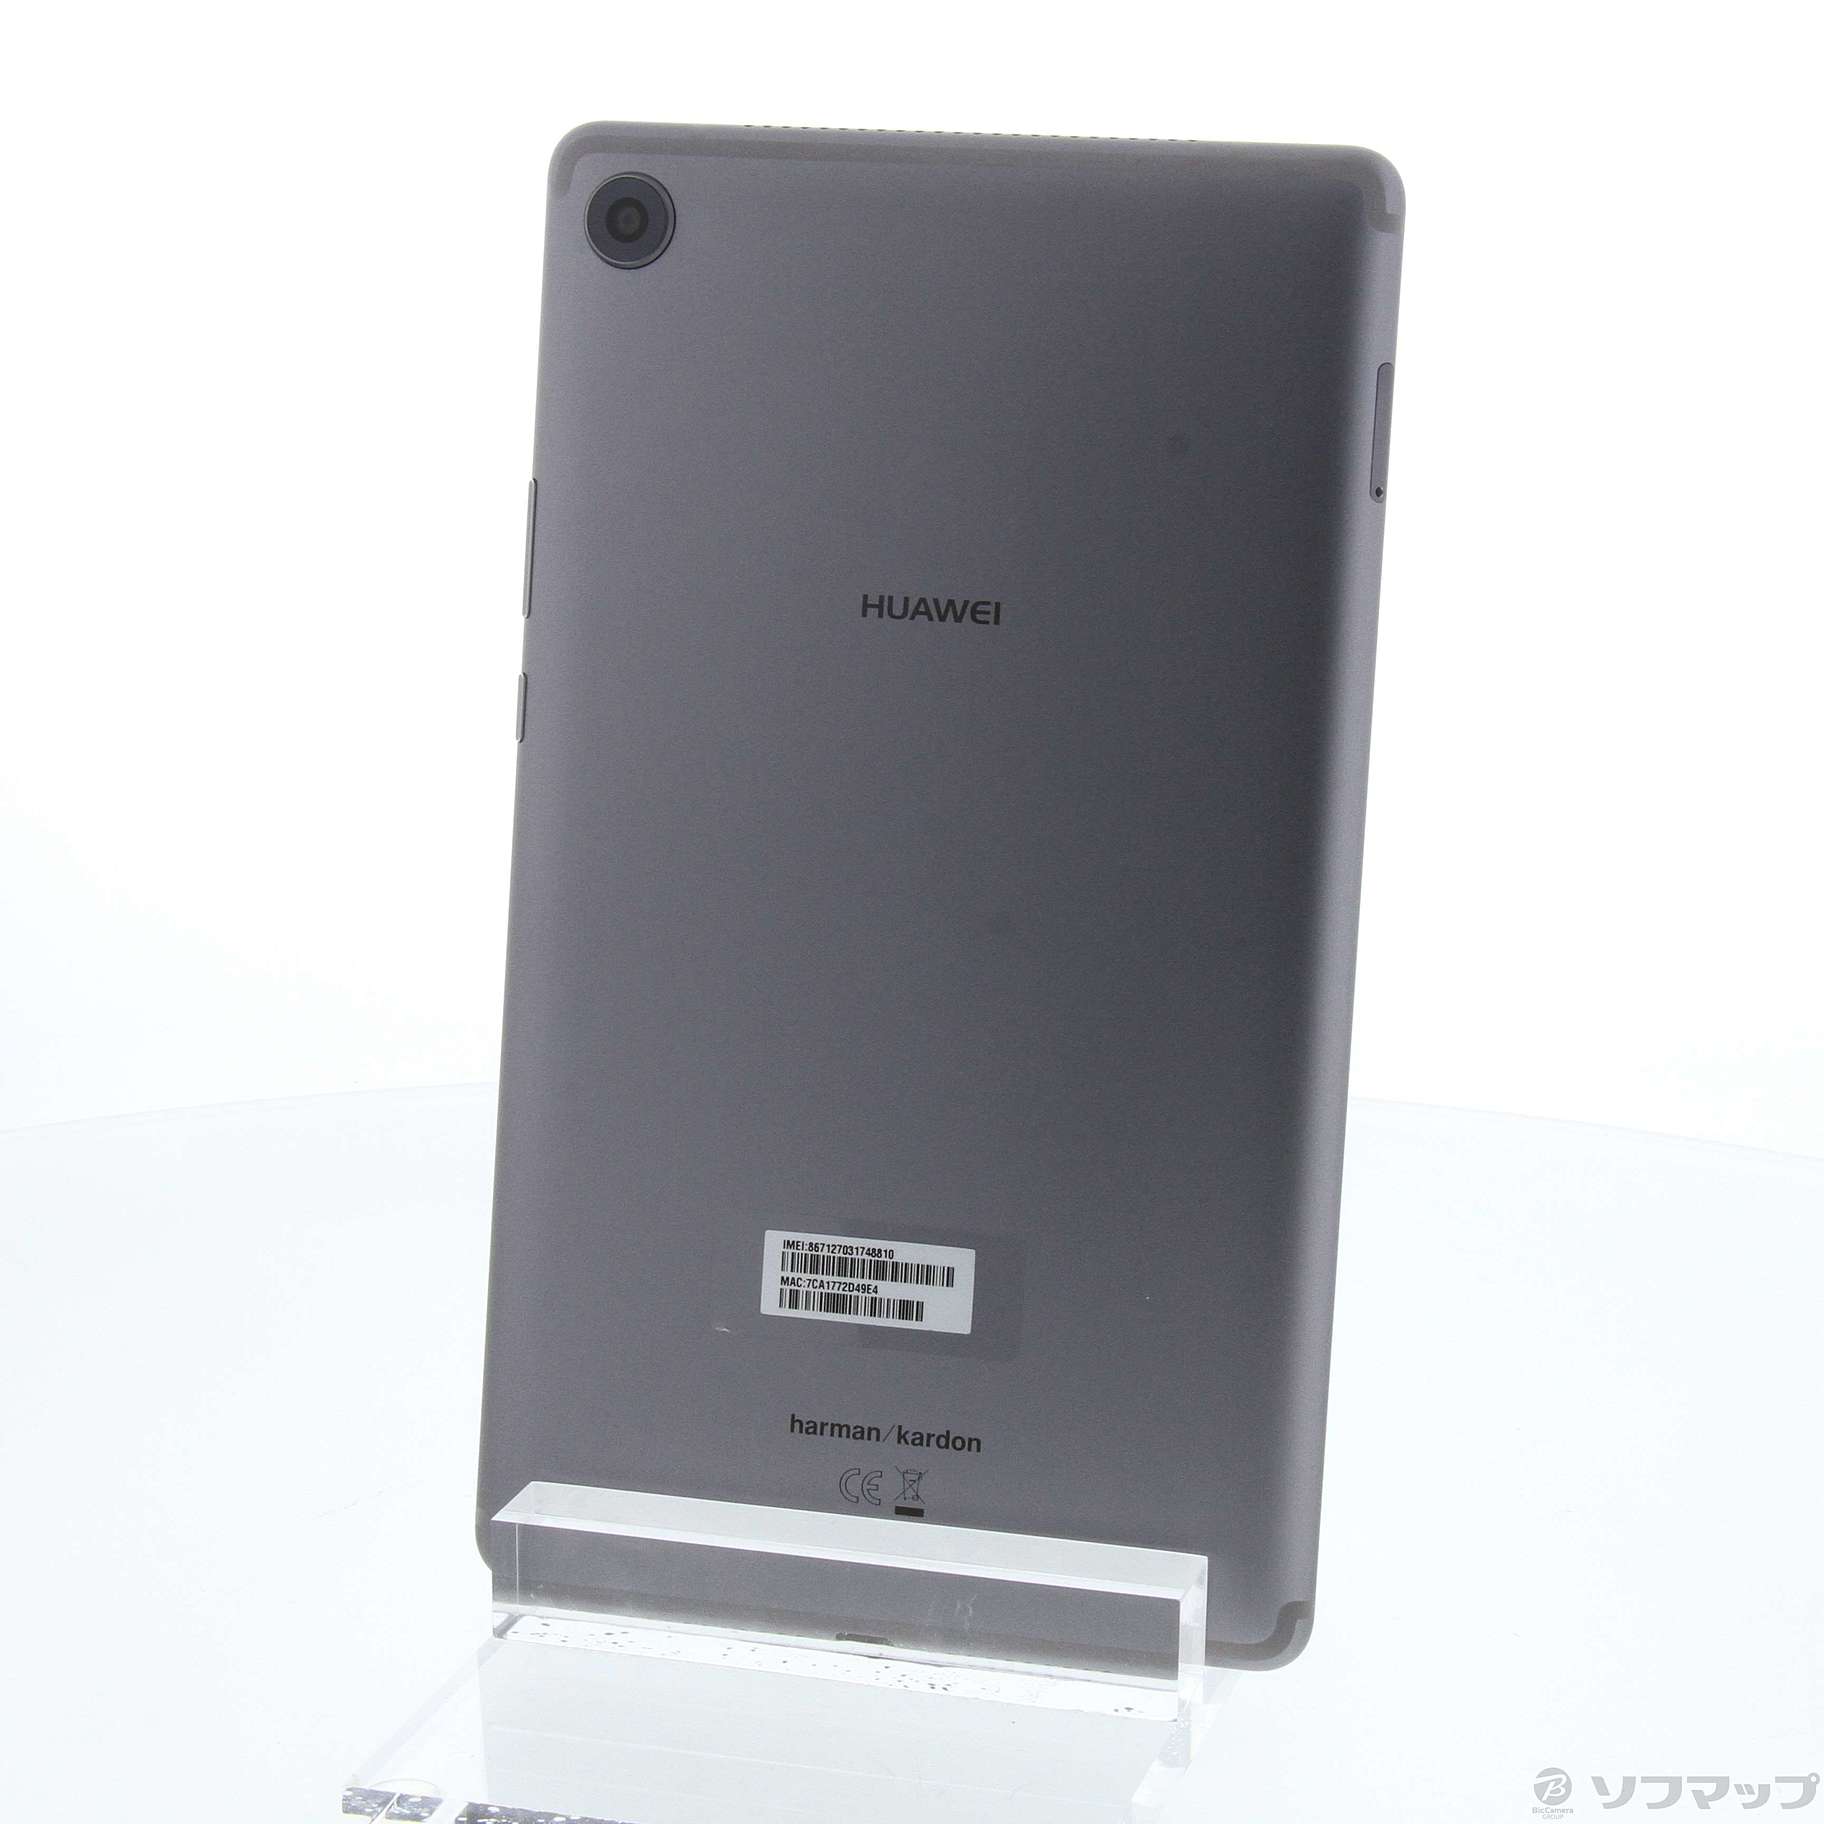 (中古)HUAWEI MediaPad M5 32GB スペースグレイ SHT-AL09 SIMフリー(247-ud)